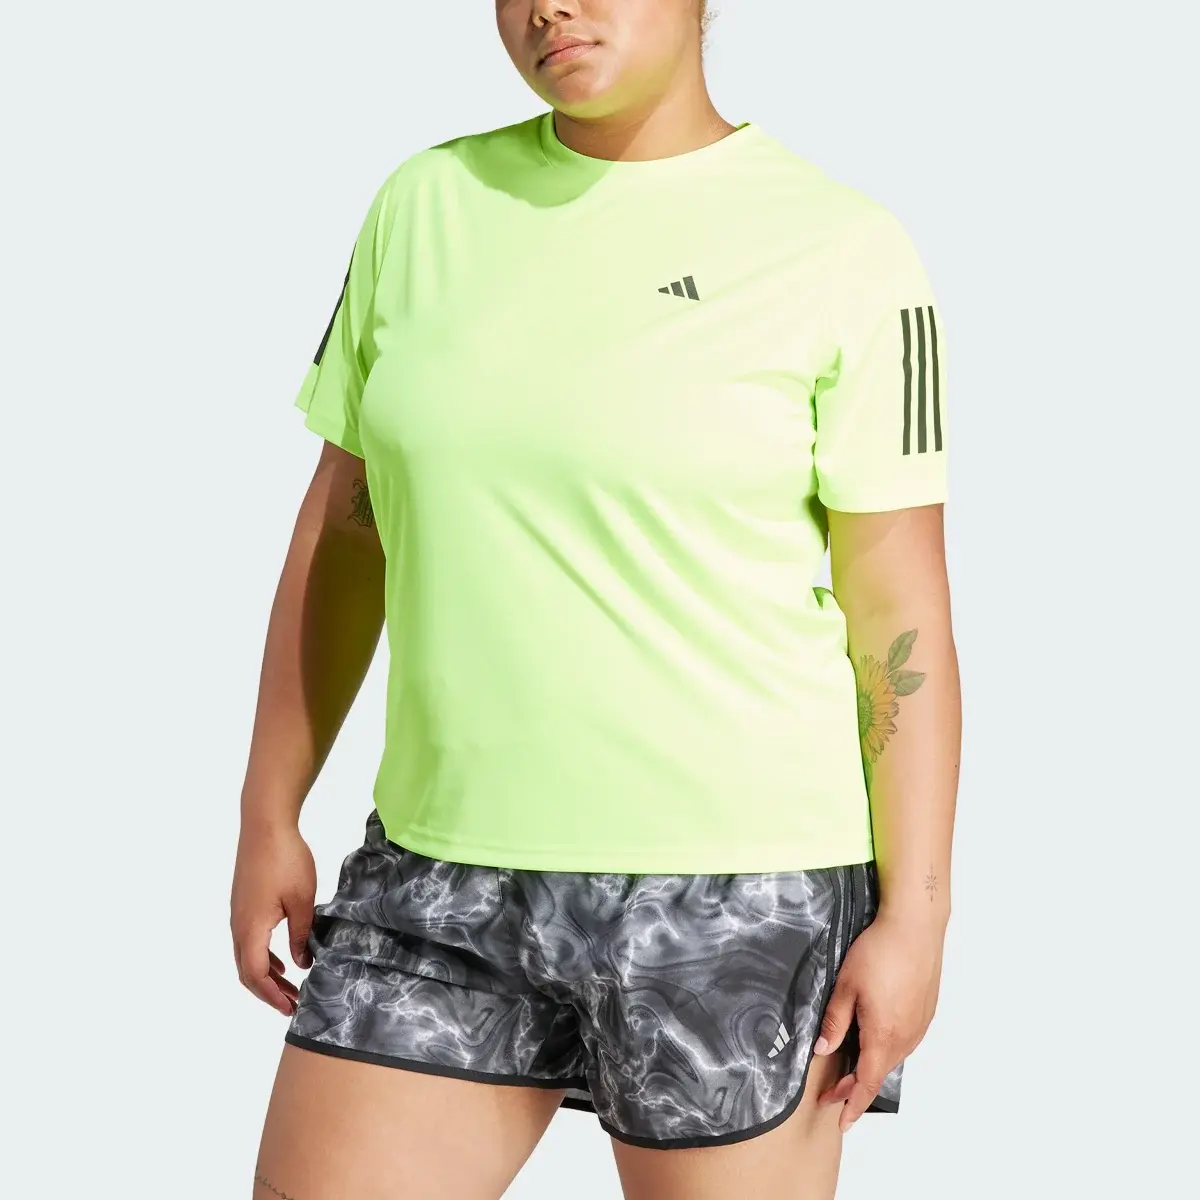 Adidas T-shirt Own the Run (Curvy). 1